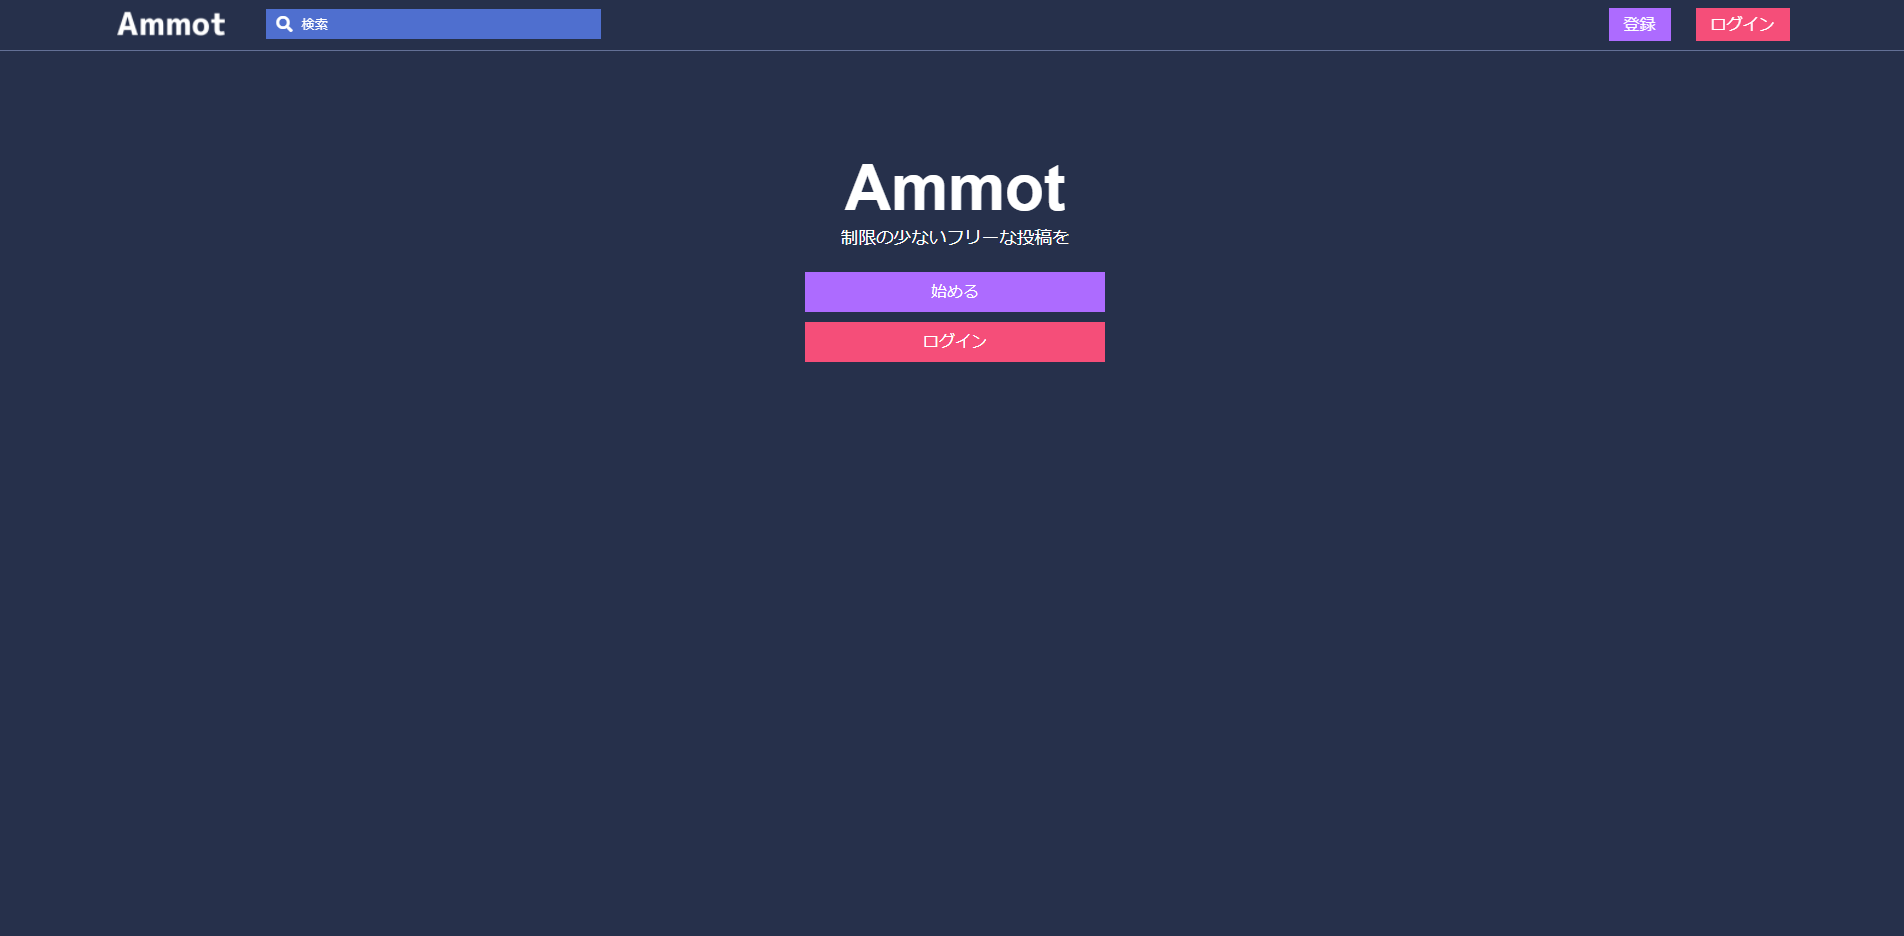 Ammot